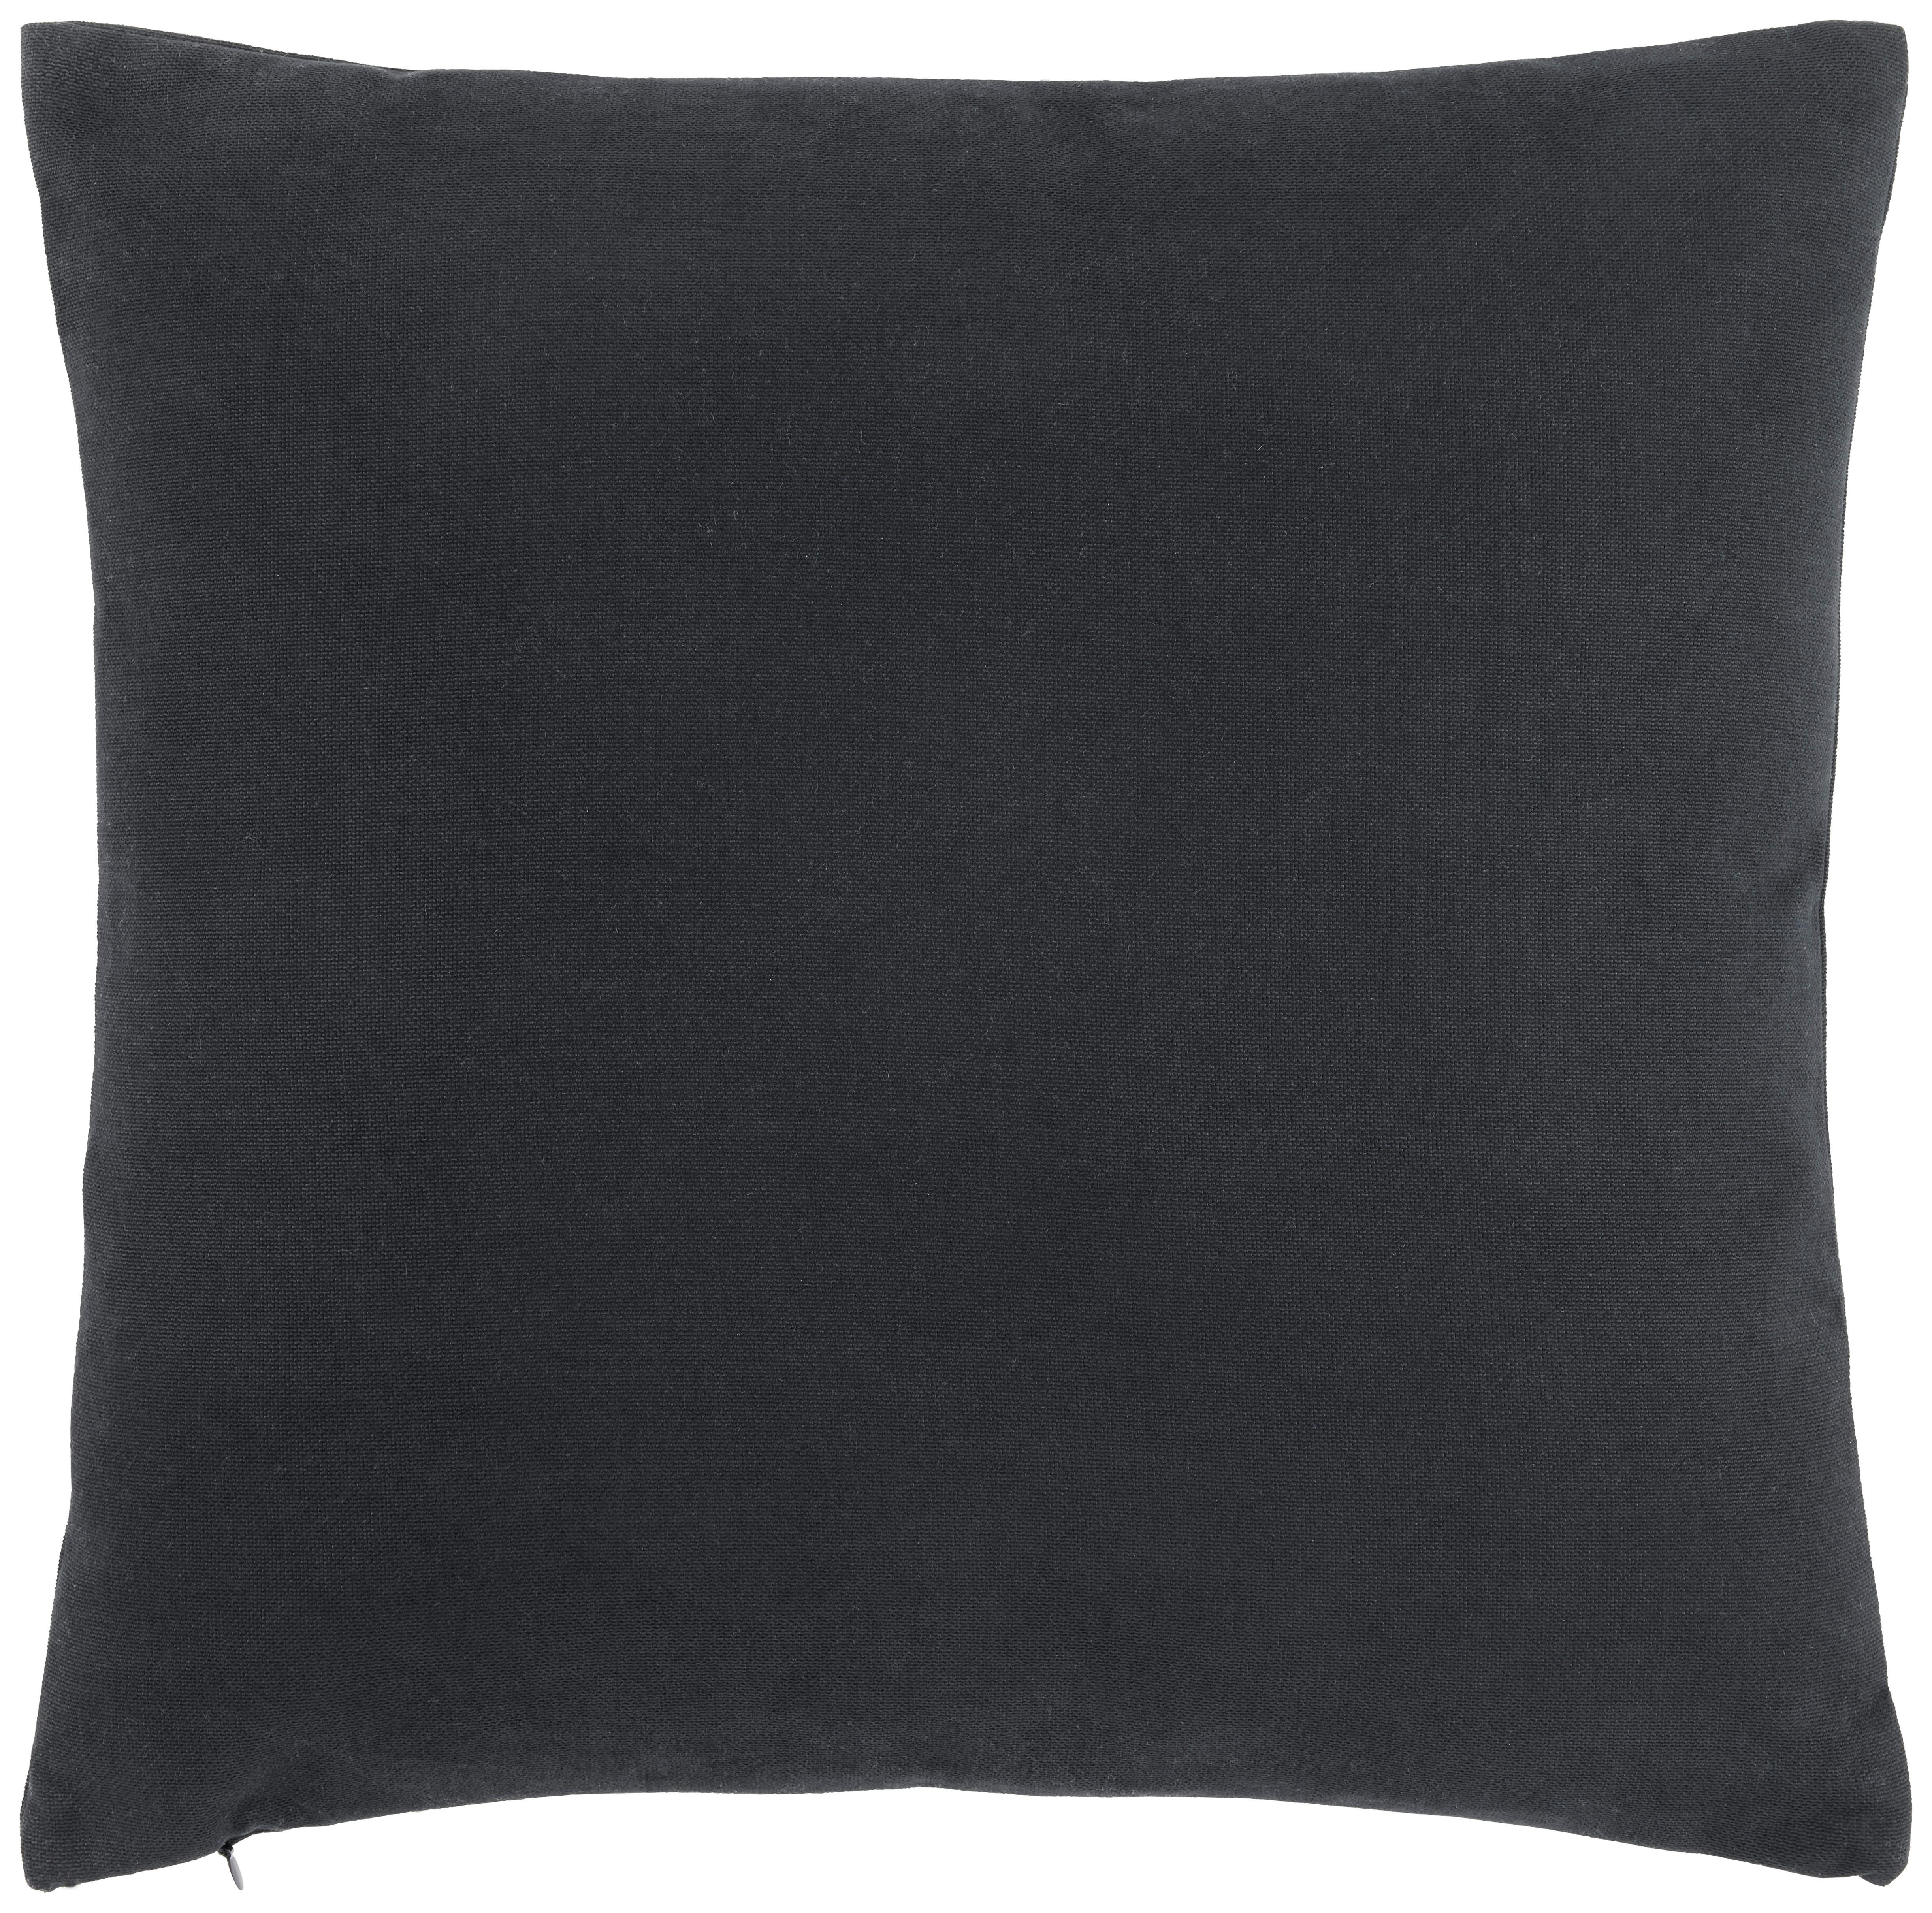 Dekorační Polštář Lexi, 45/45cm, Černá - černá, Moderní, textil (45/45cm) - Modern Living